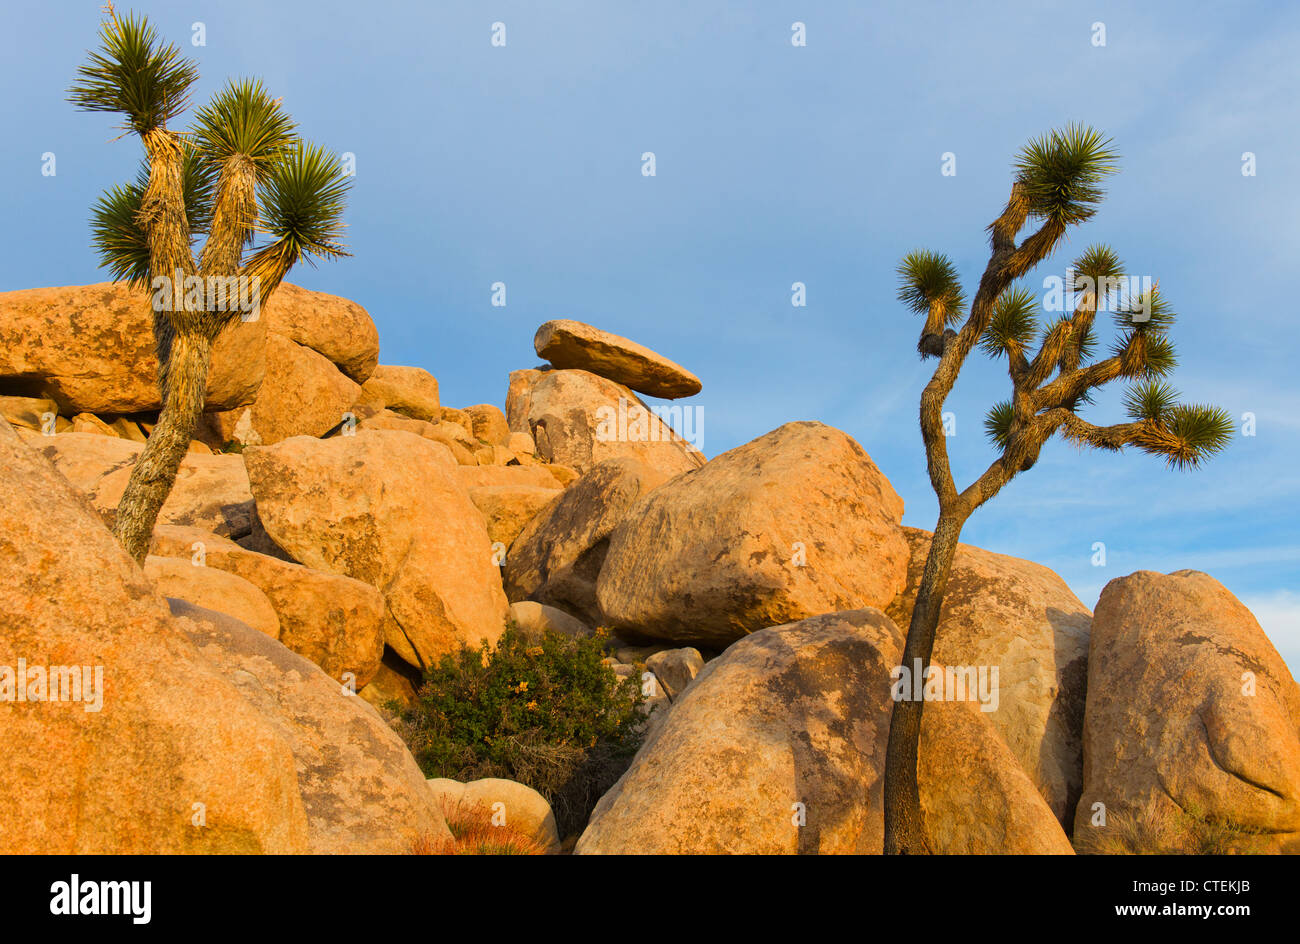 USA, California, Joshua Tree National Park, Rock formations Stock Photo